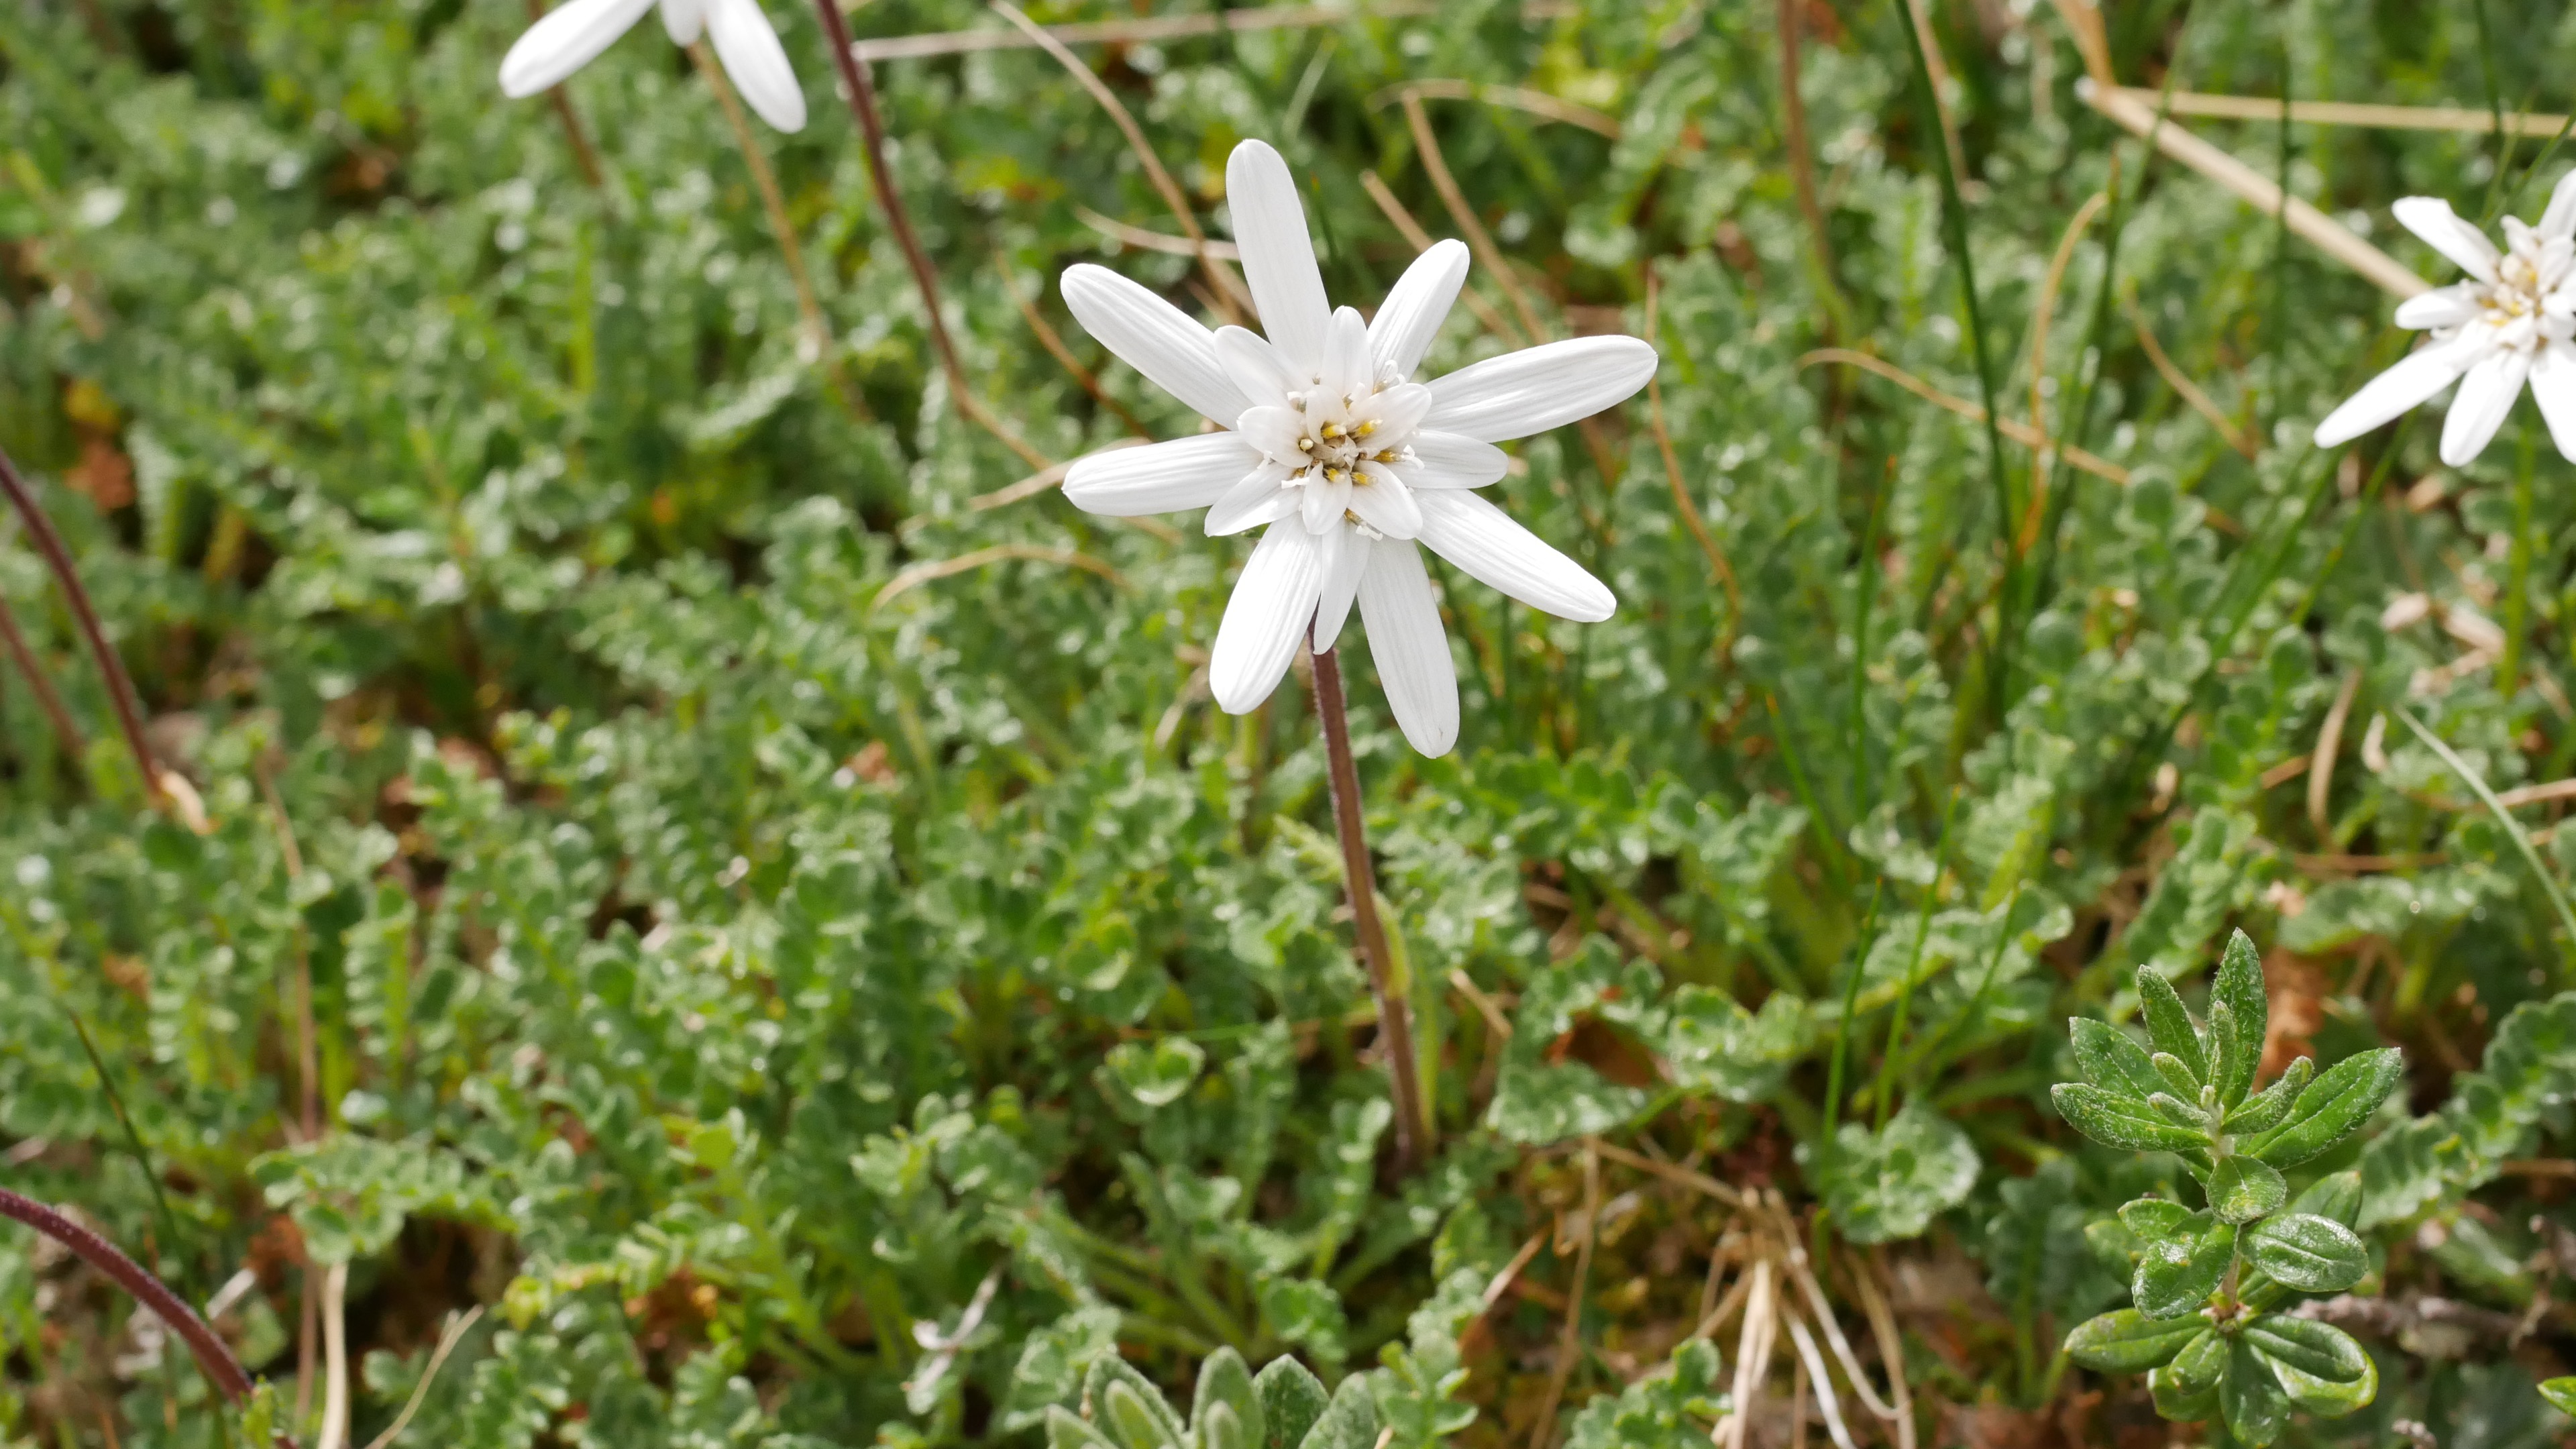 Abb. 12 Die hübsche Perezia magellanica aus der Familie der Korbblütler (Asteraceae). Sie ist an Moore, Sümpfe und feuchtes Grünland des südlichen Südamerikas gebunden.